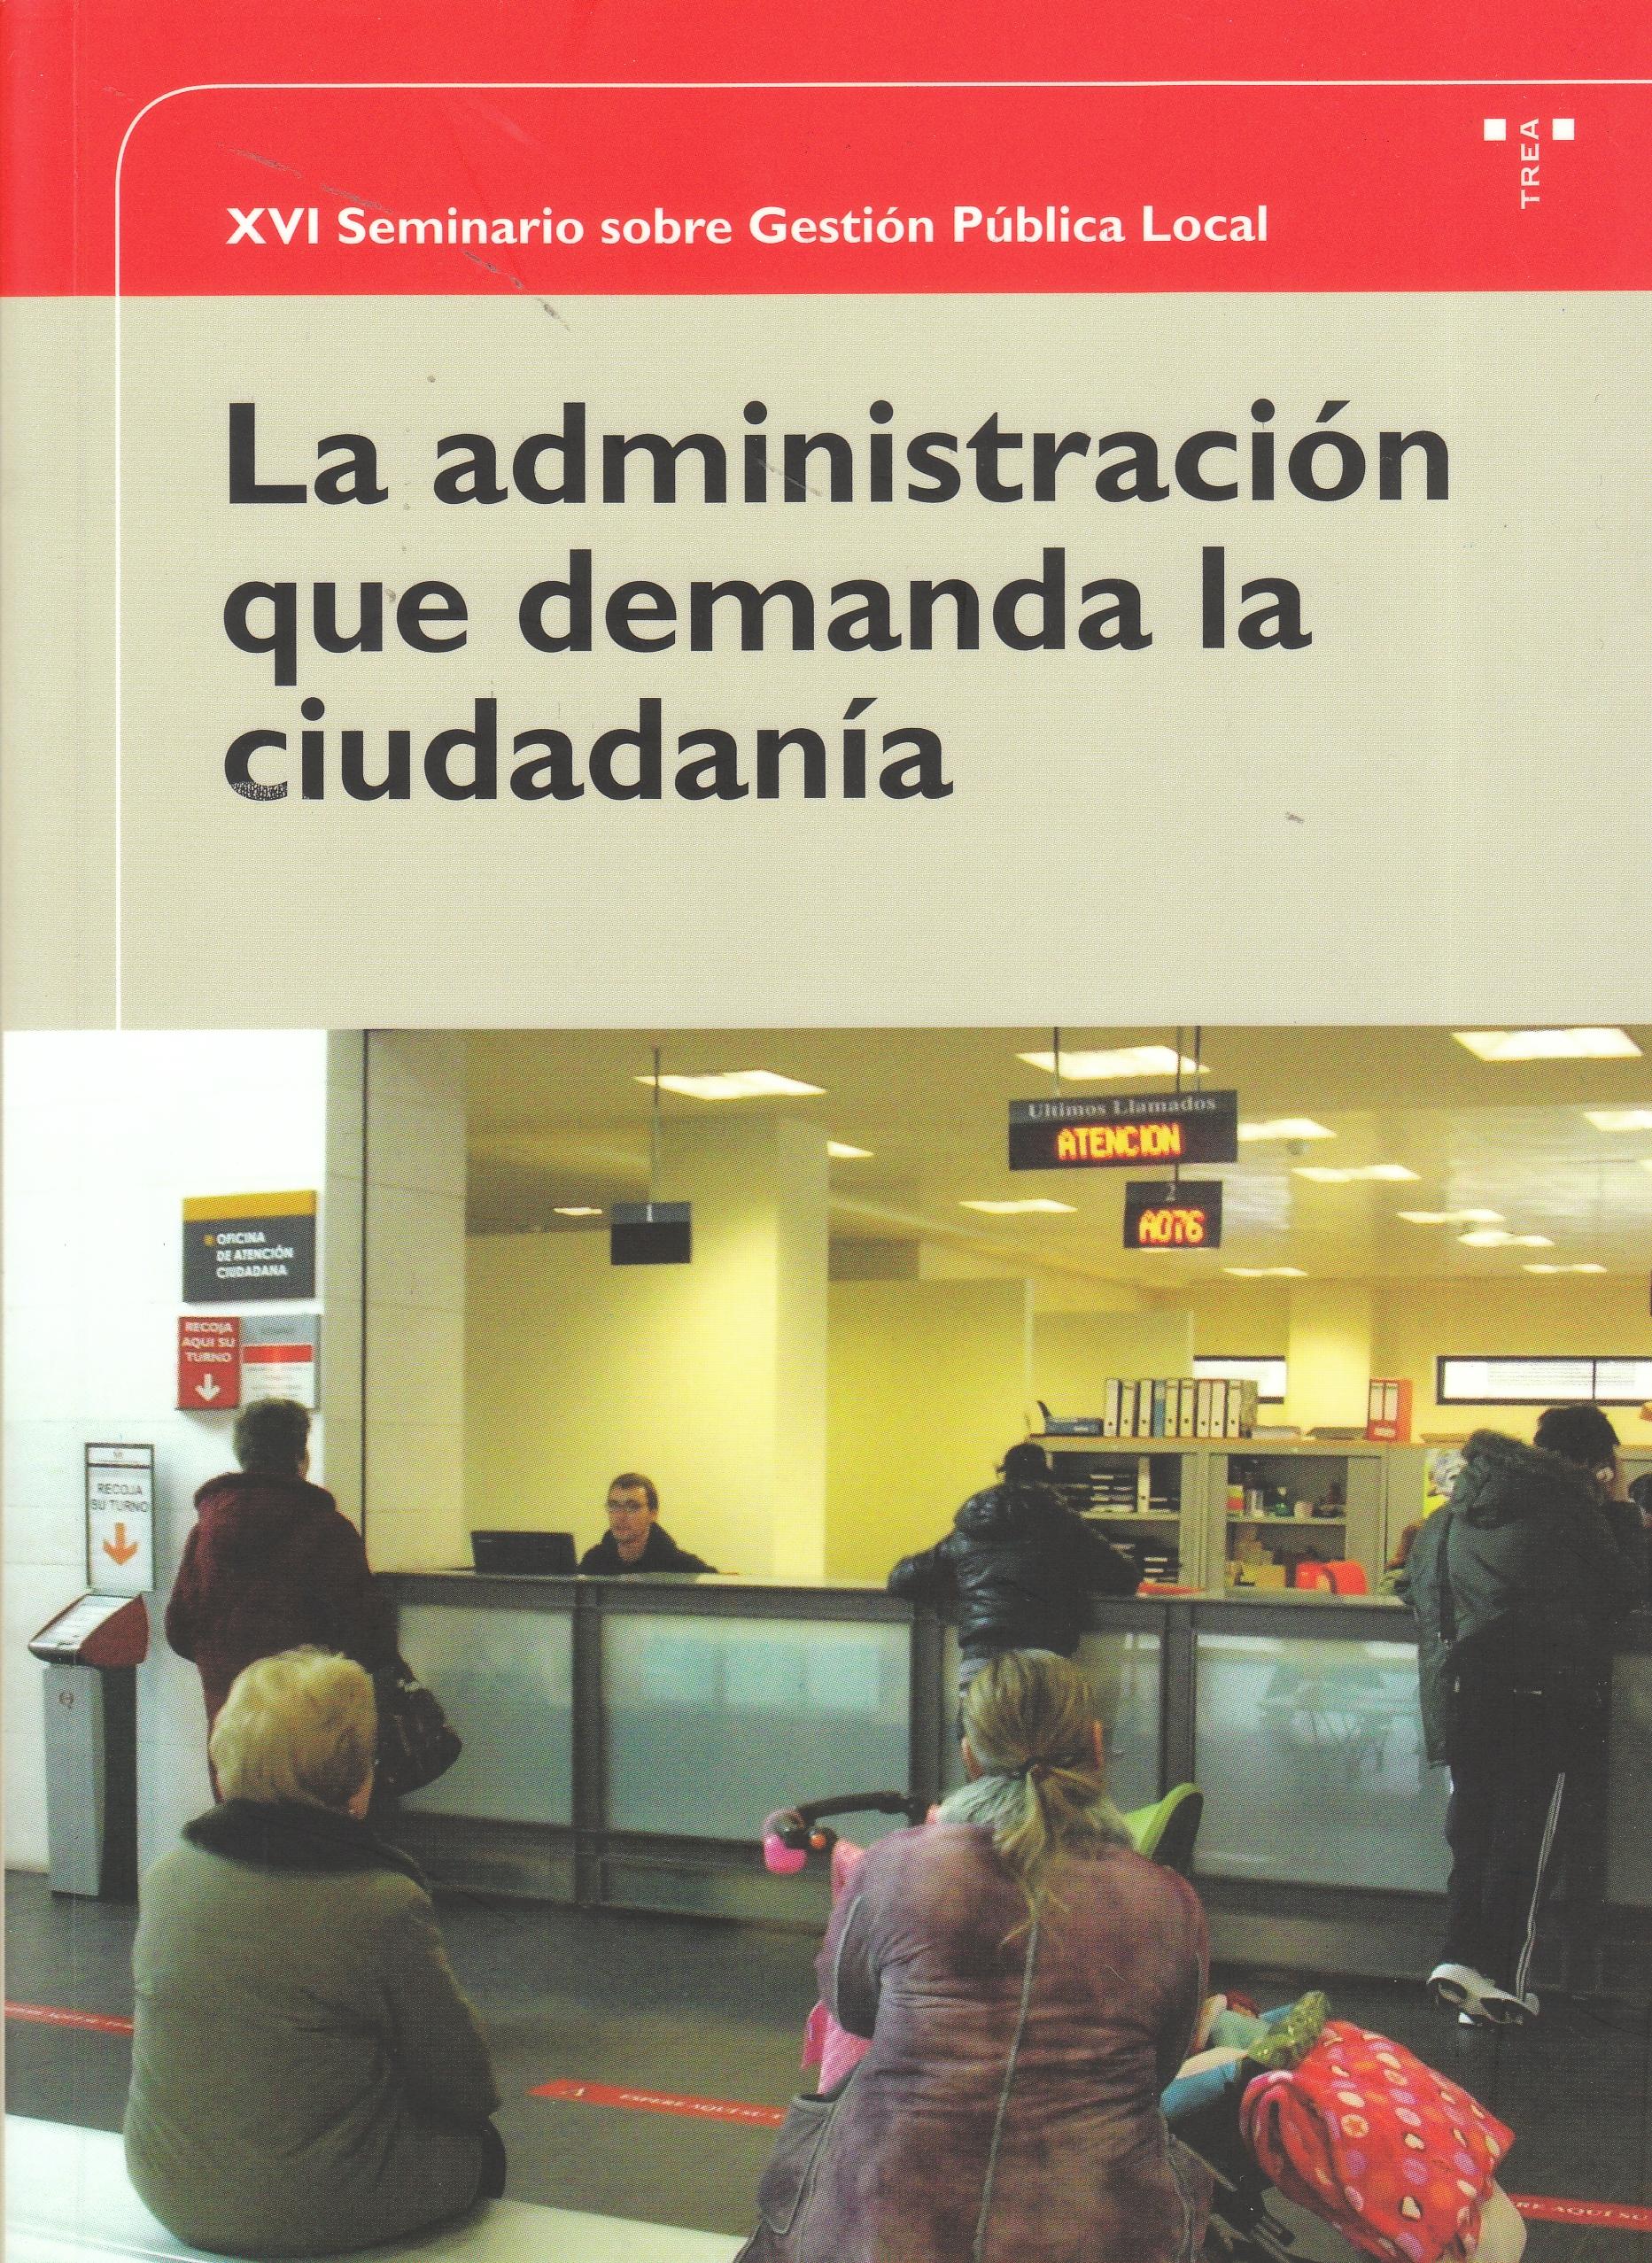 La administración que demanda la ciudadanía "XVI Seminario sobre Gestión Pública Local"